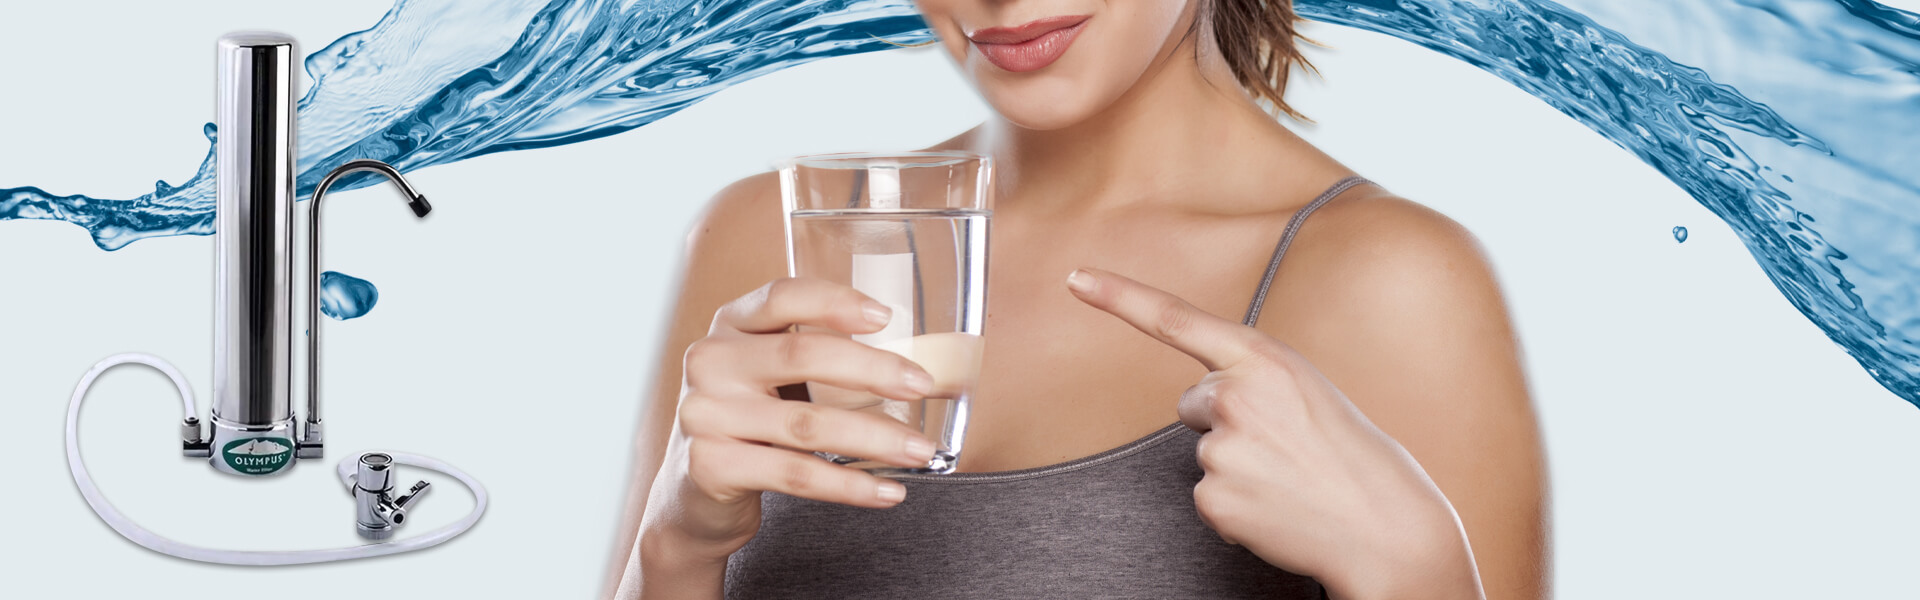 Slajd - 1 - kobieta ze szklanką wody